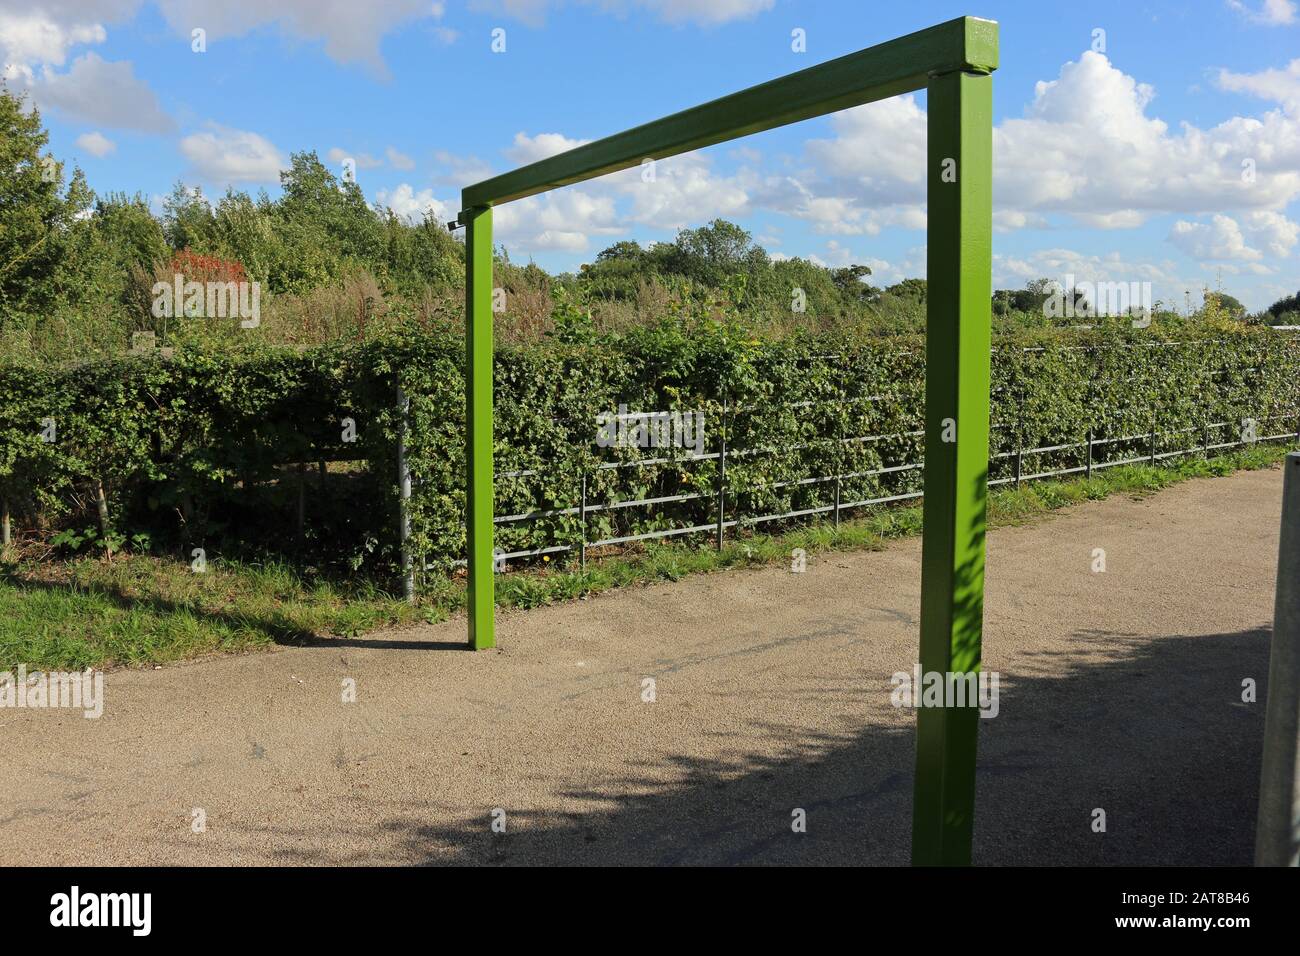 Parque rural verde pintado de metal de la barrera de restricción de altura del aparcamiento, con una valla de metal y cobertura con cielo azul y nube blanca. Foto de stock